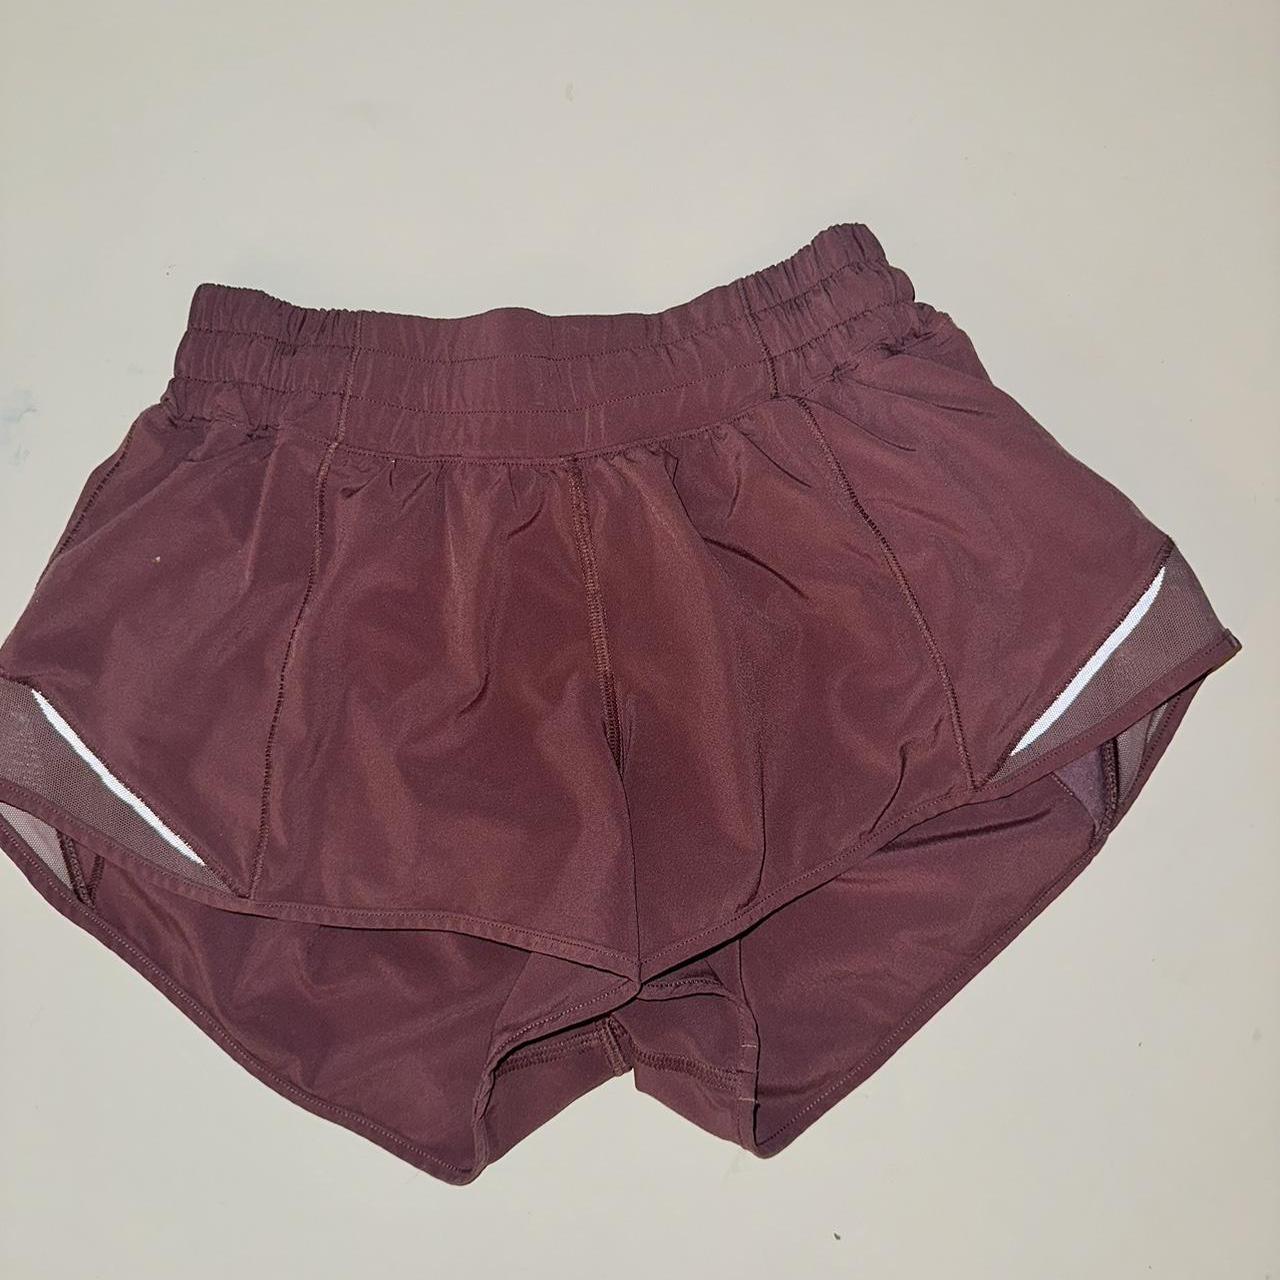 Lululemon velvet dust Hotty hot shorts 2.5” - Depop